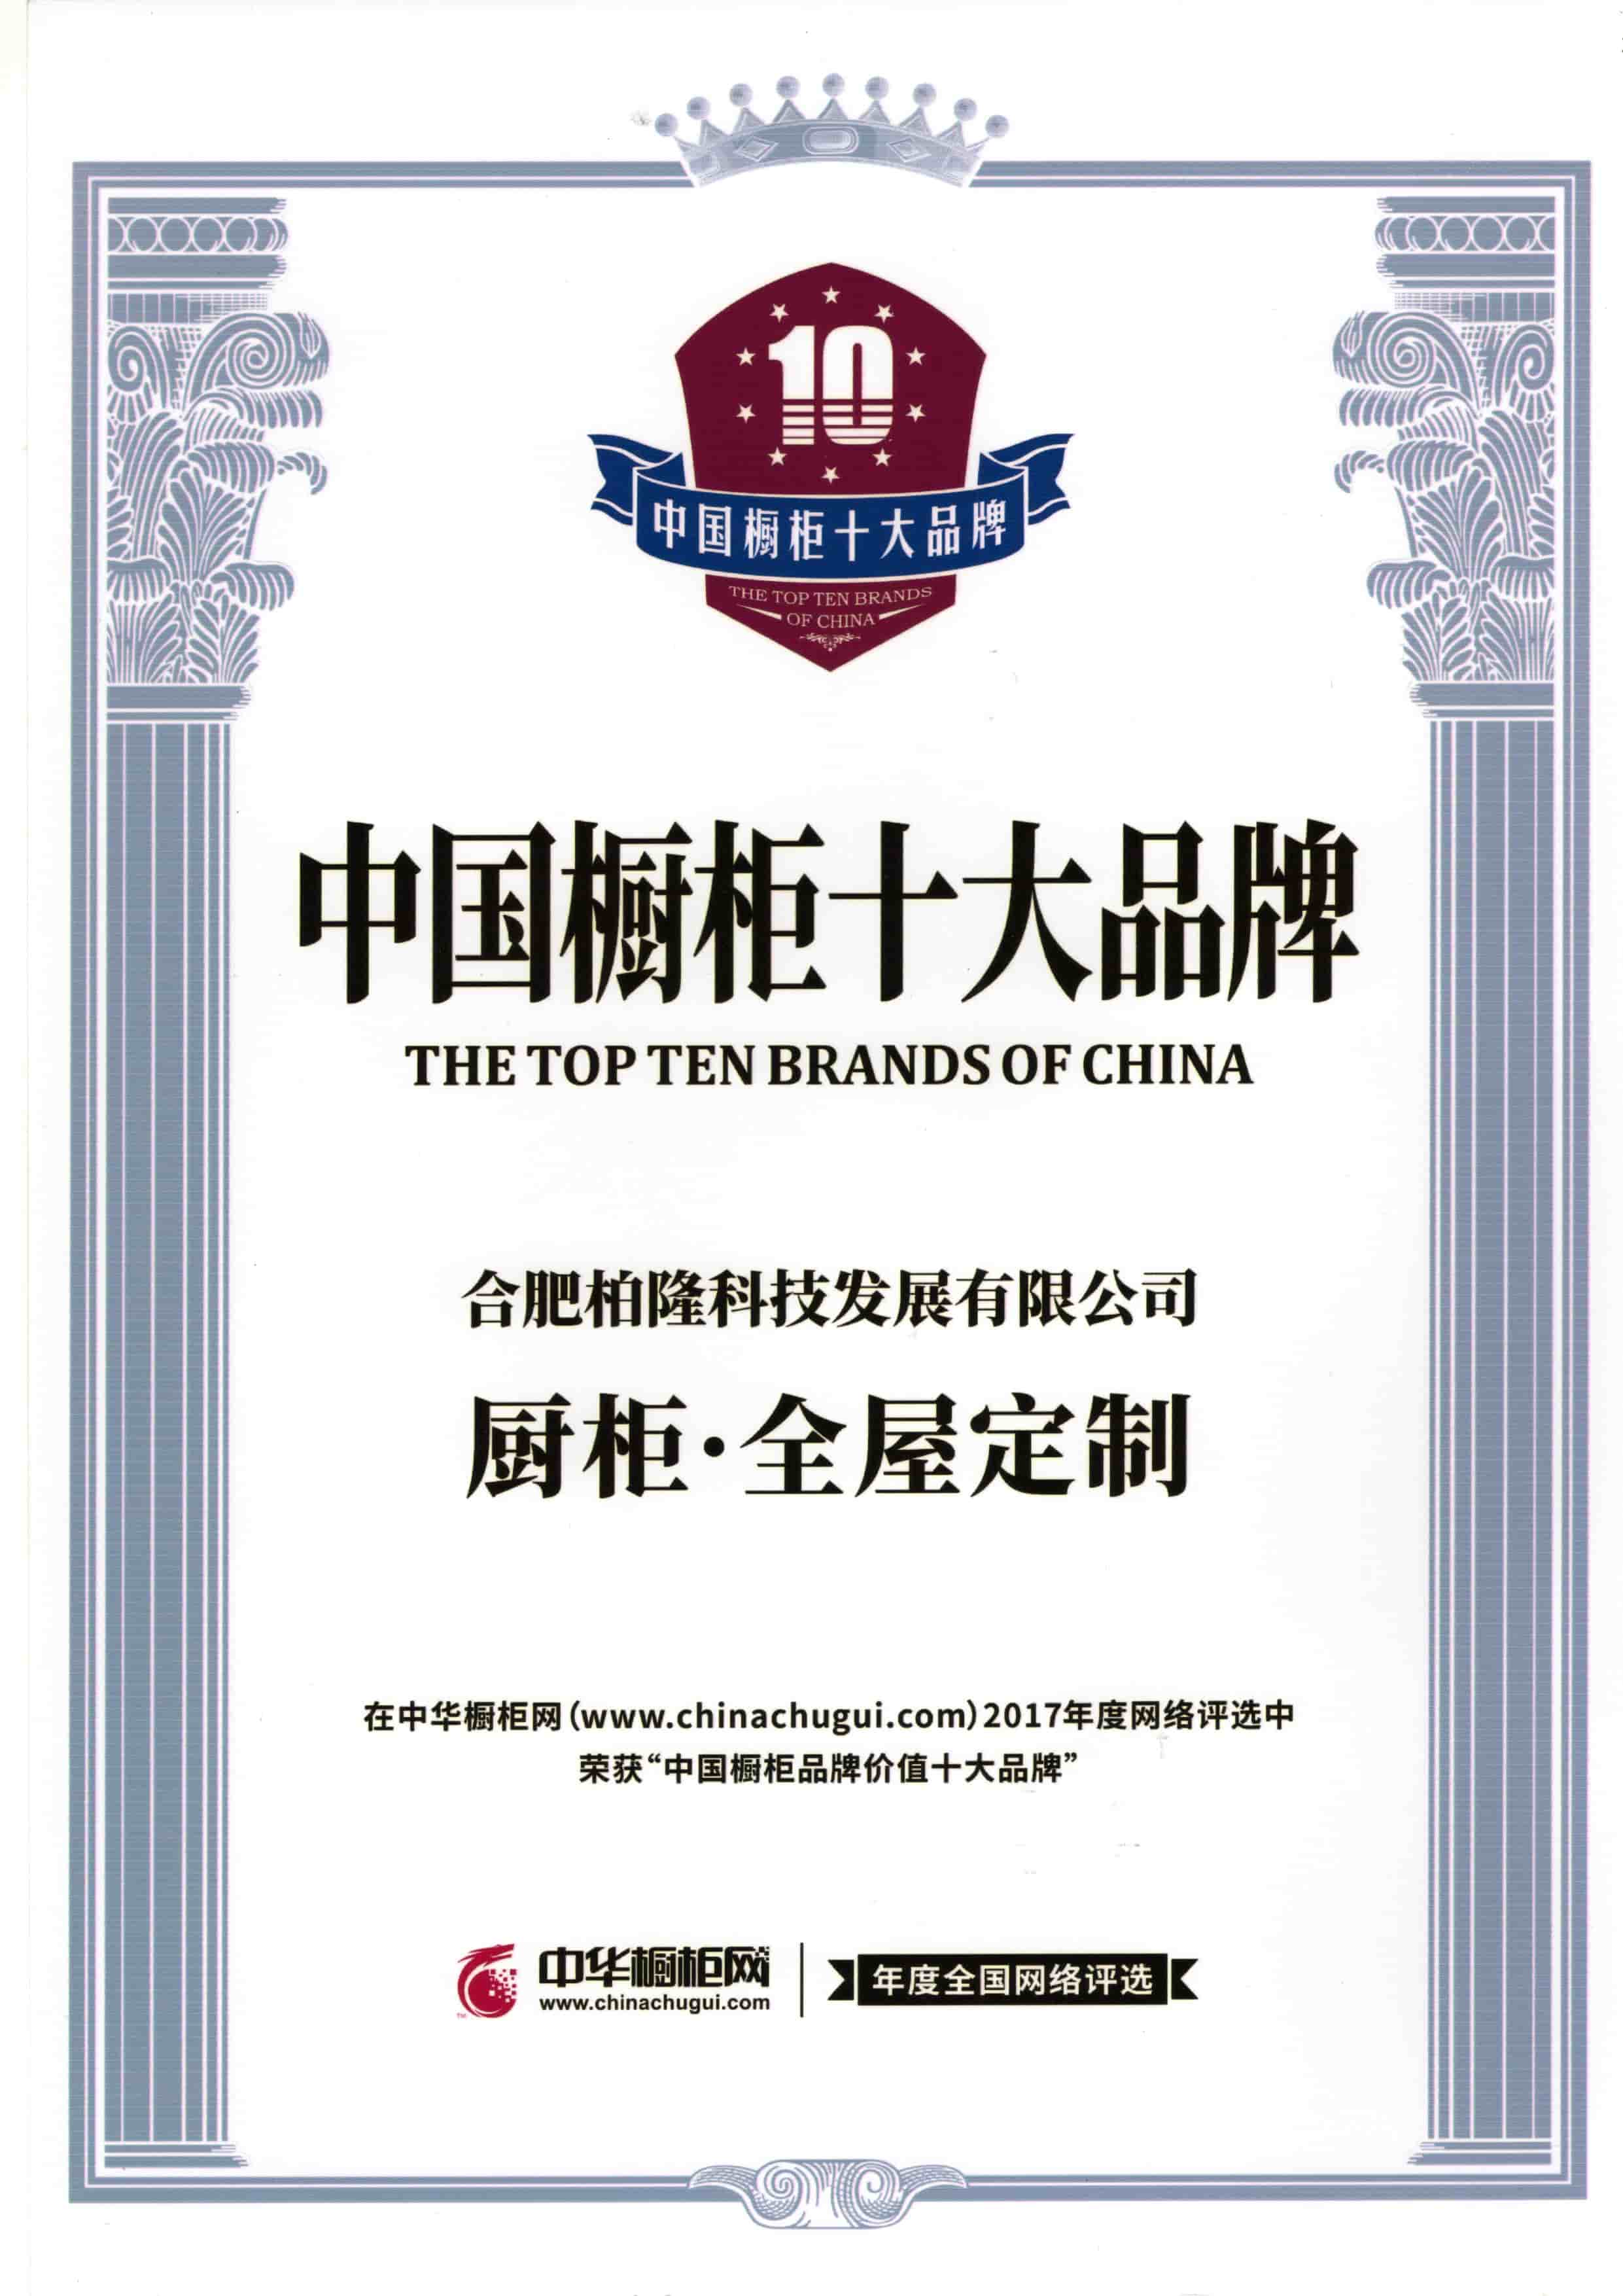 Una de las diez mejores marcas en China.
